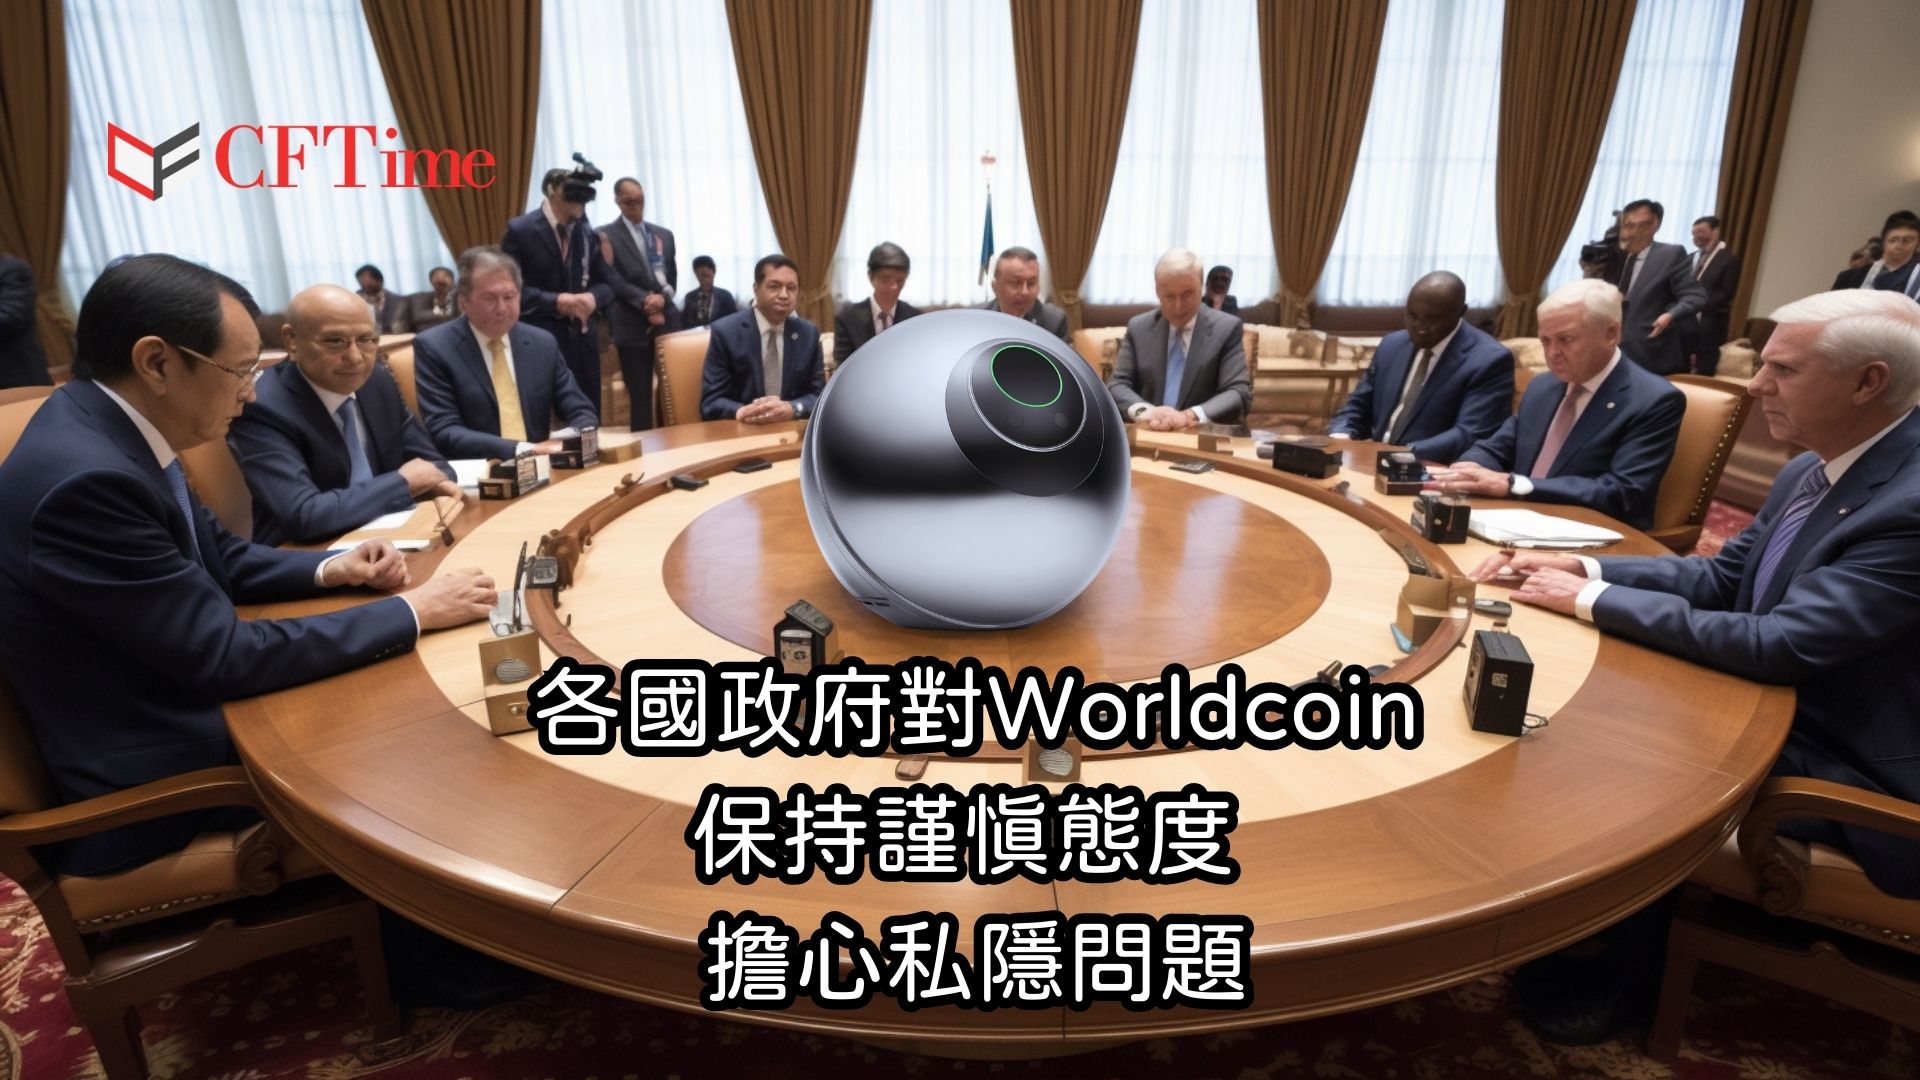 政府對Worldcoin